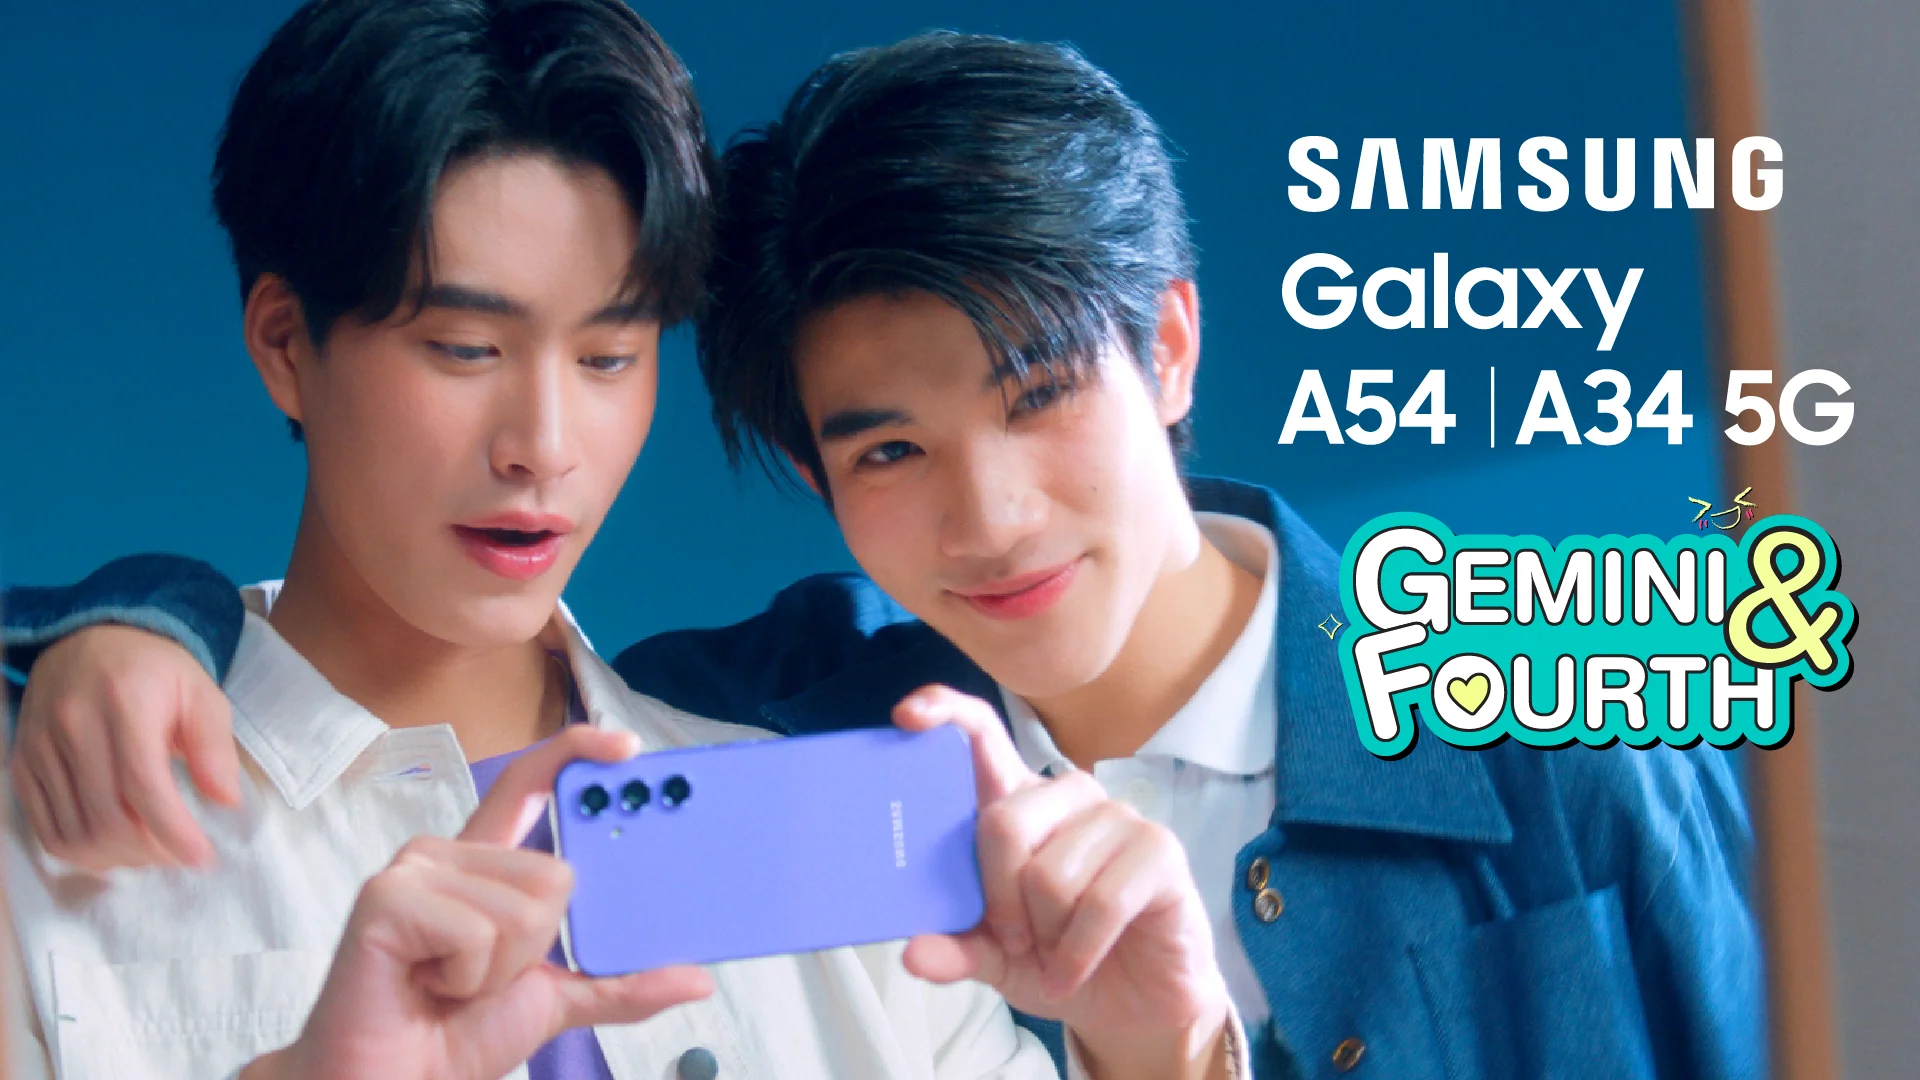 Galaxy A54 5G Trailer